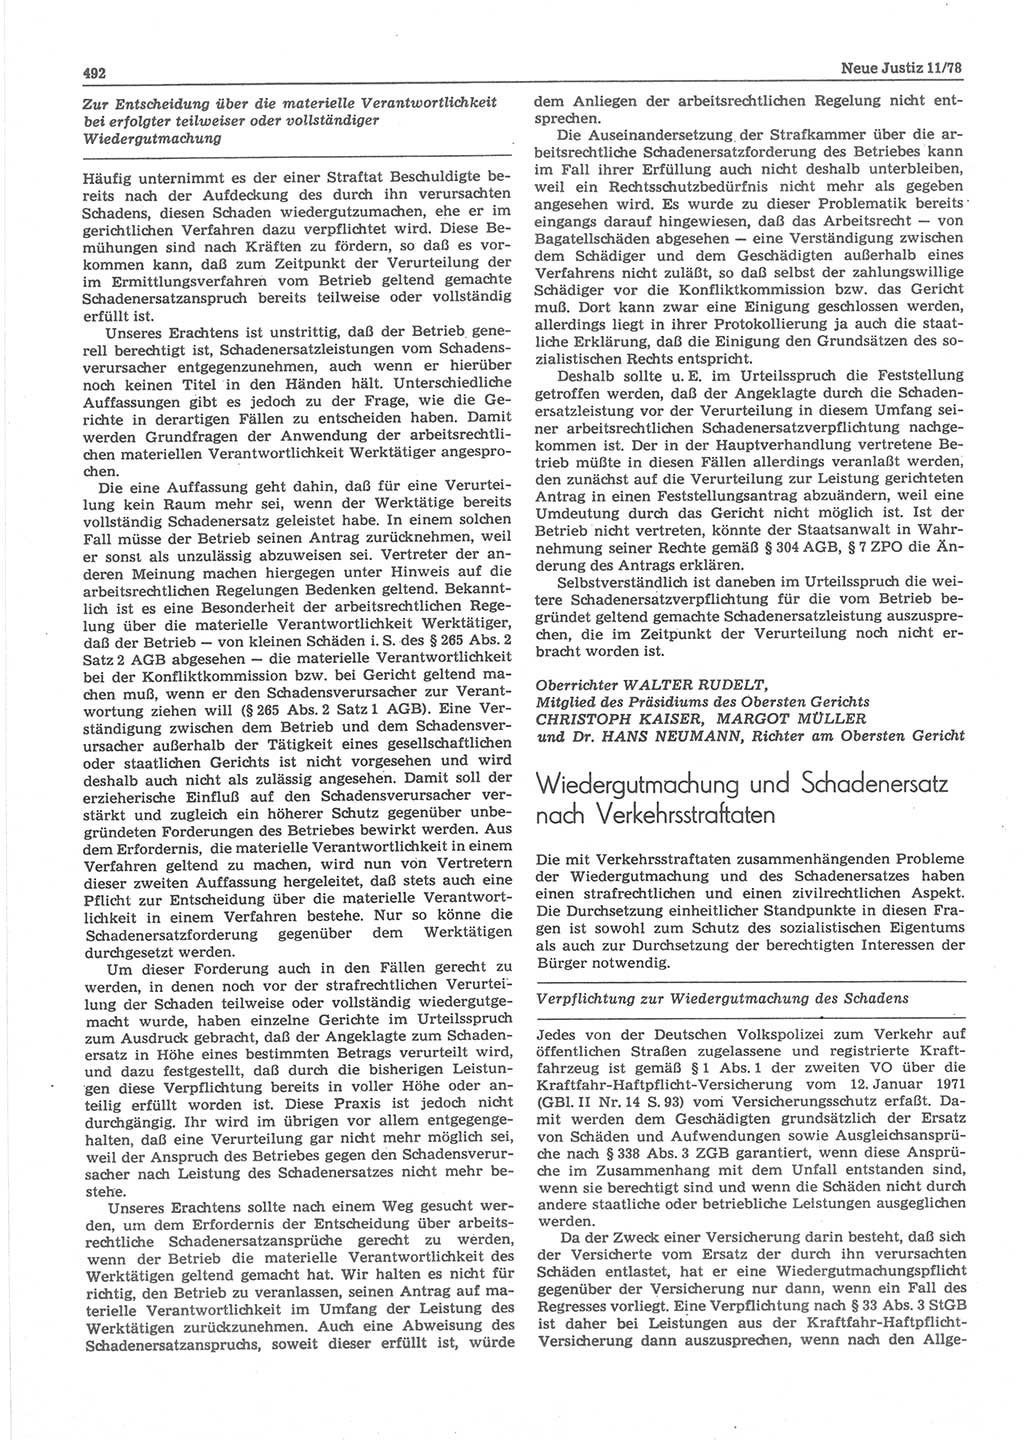 Neue Justiz (NJ), Zeitschrift für sozialistisches Recht und Gesetzlichkeit [Deutsche Demokratische Republik (DDR)], 32. Jahrgang 1978, Seite 492 (NJ DDR 1978, S. 492)